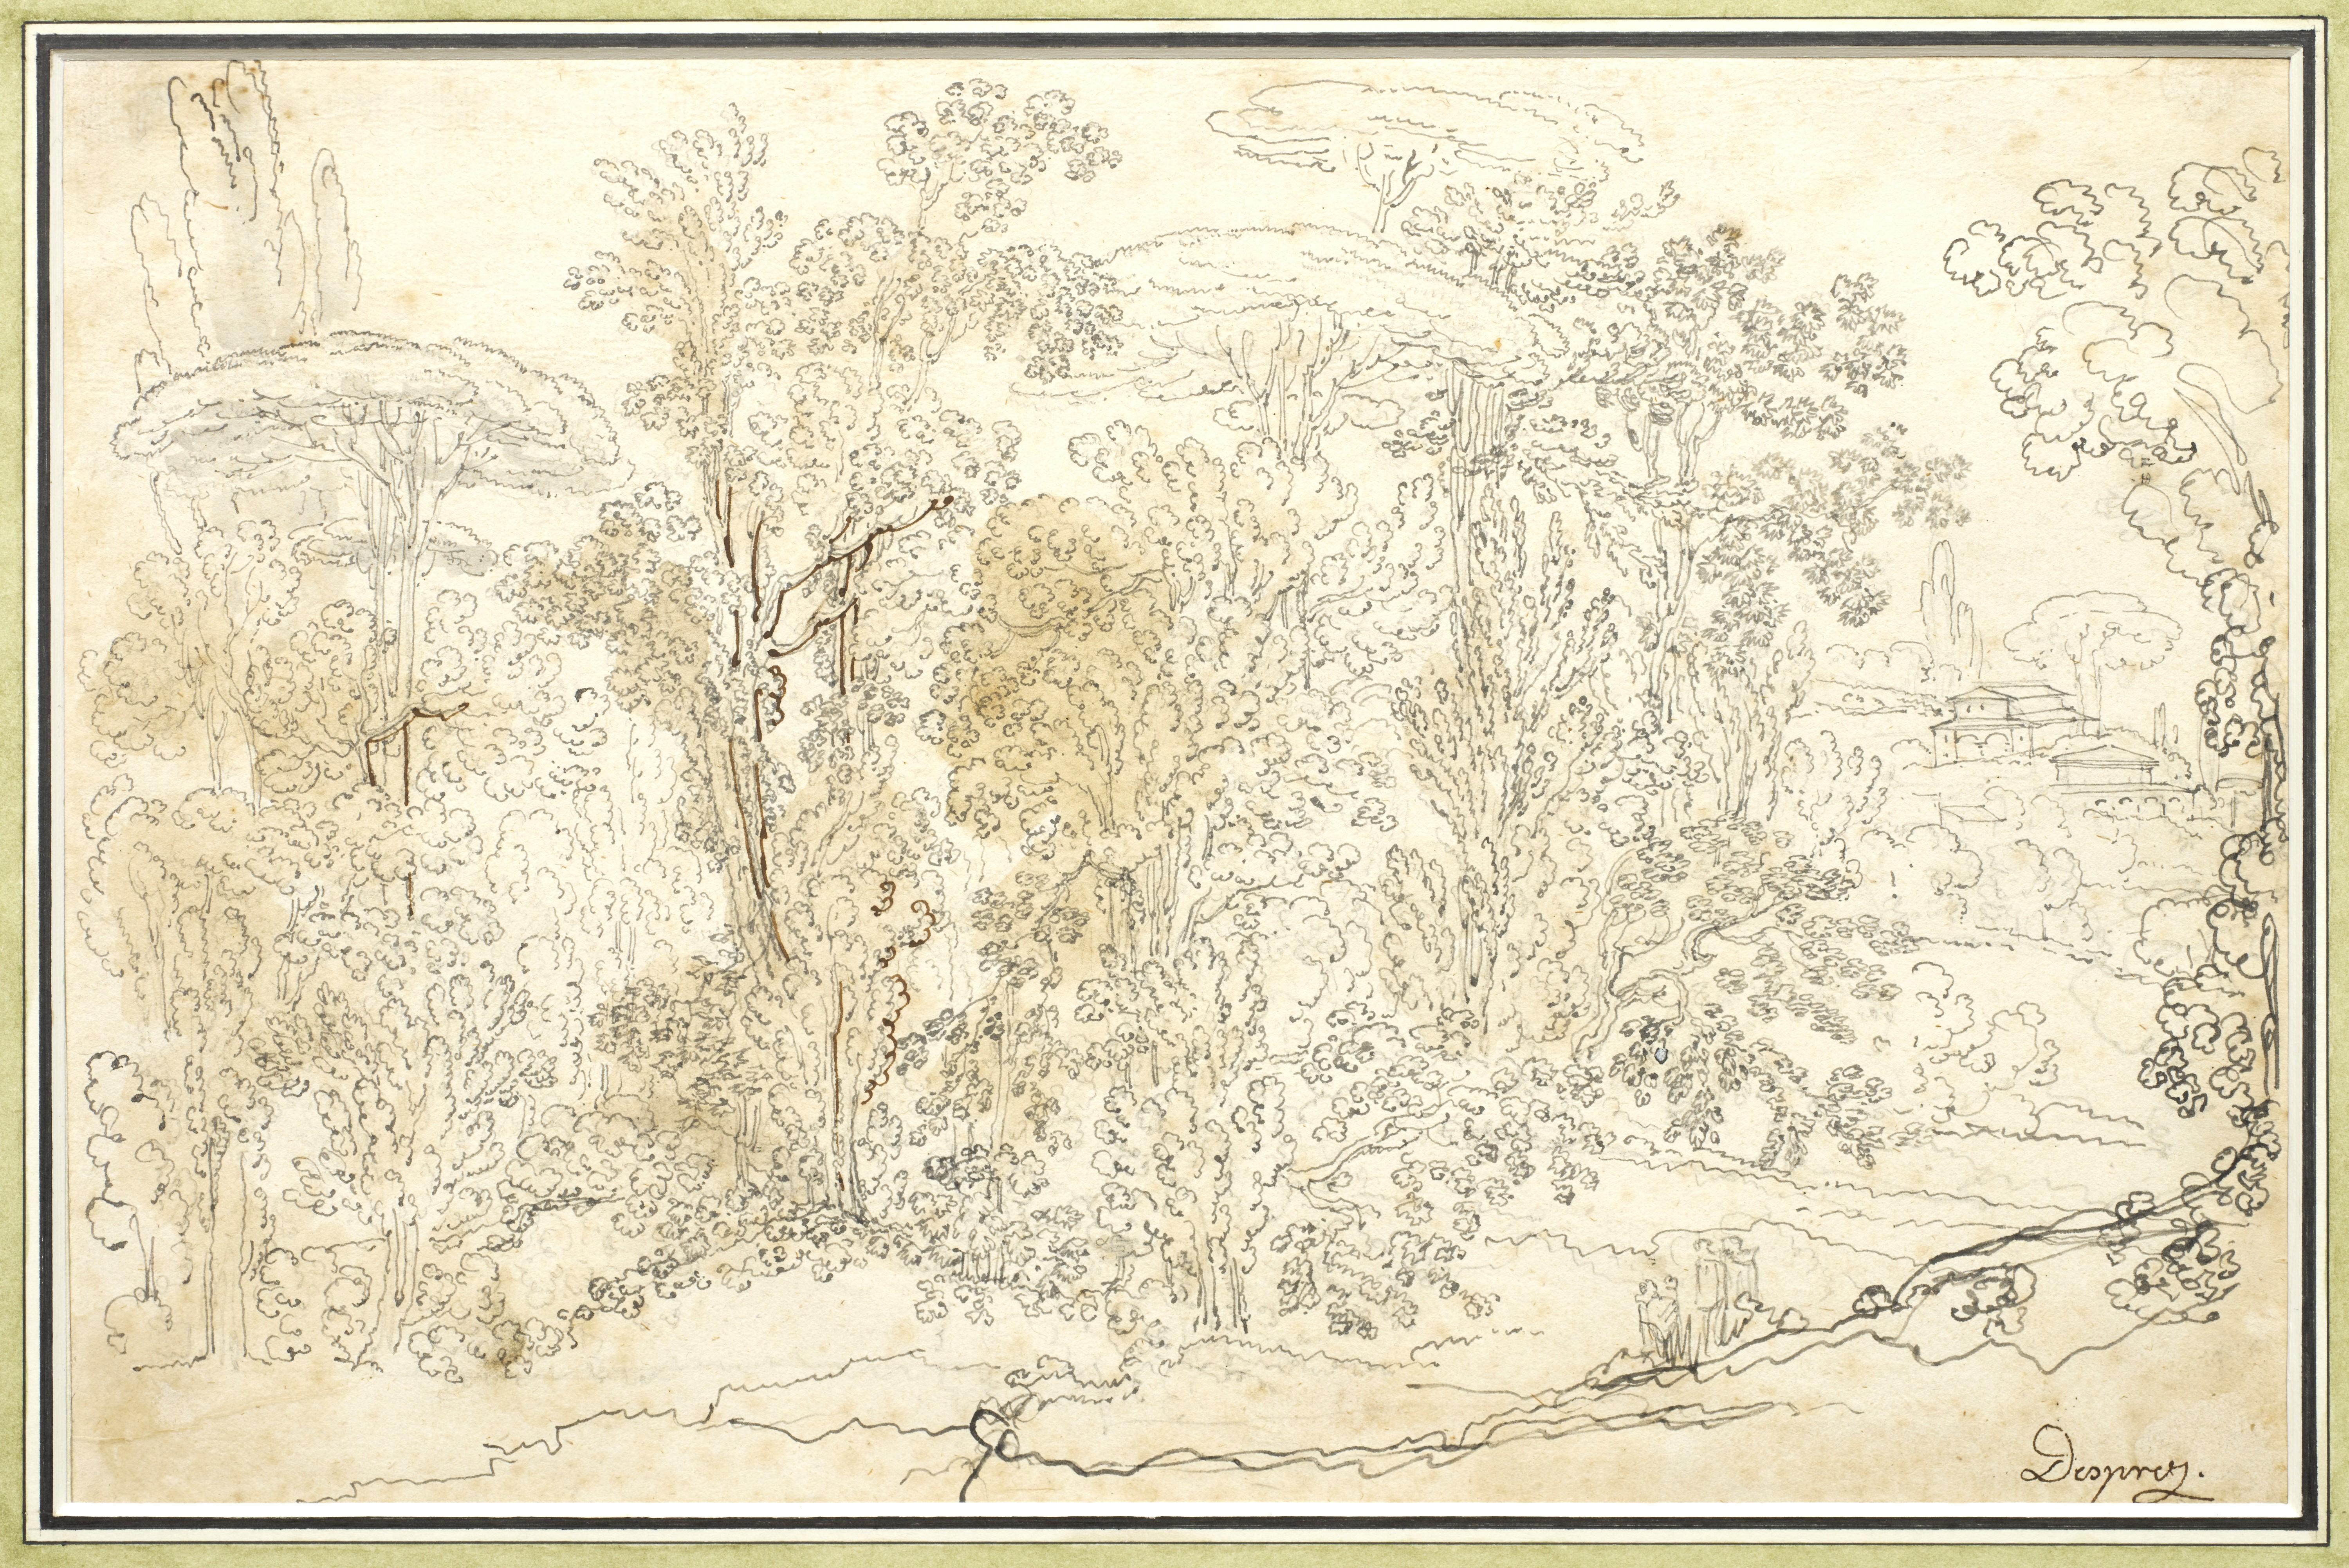 Paysage italien, un dessin de Louis-Jean Desprez (1743 - 1804)